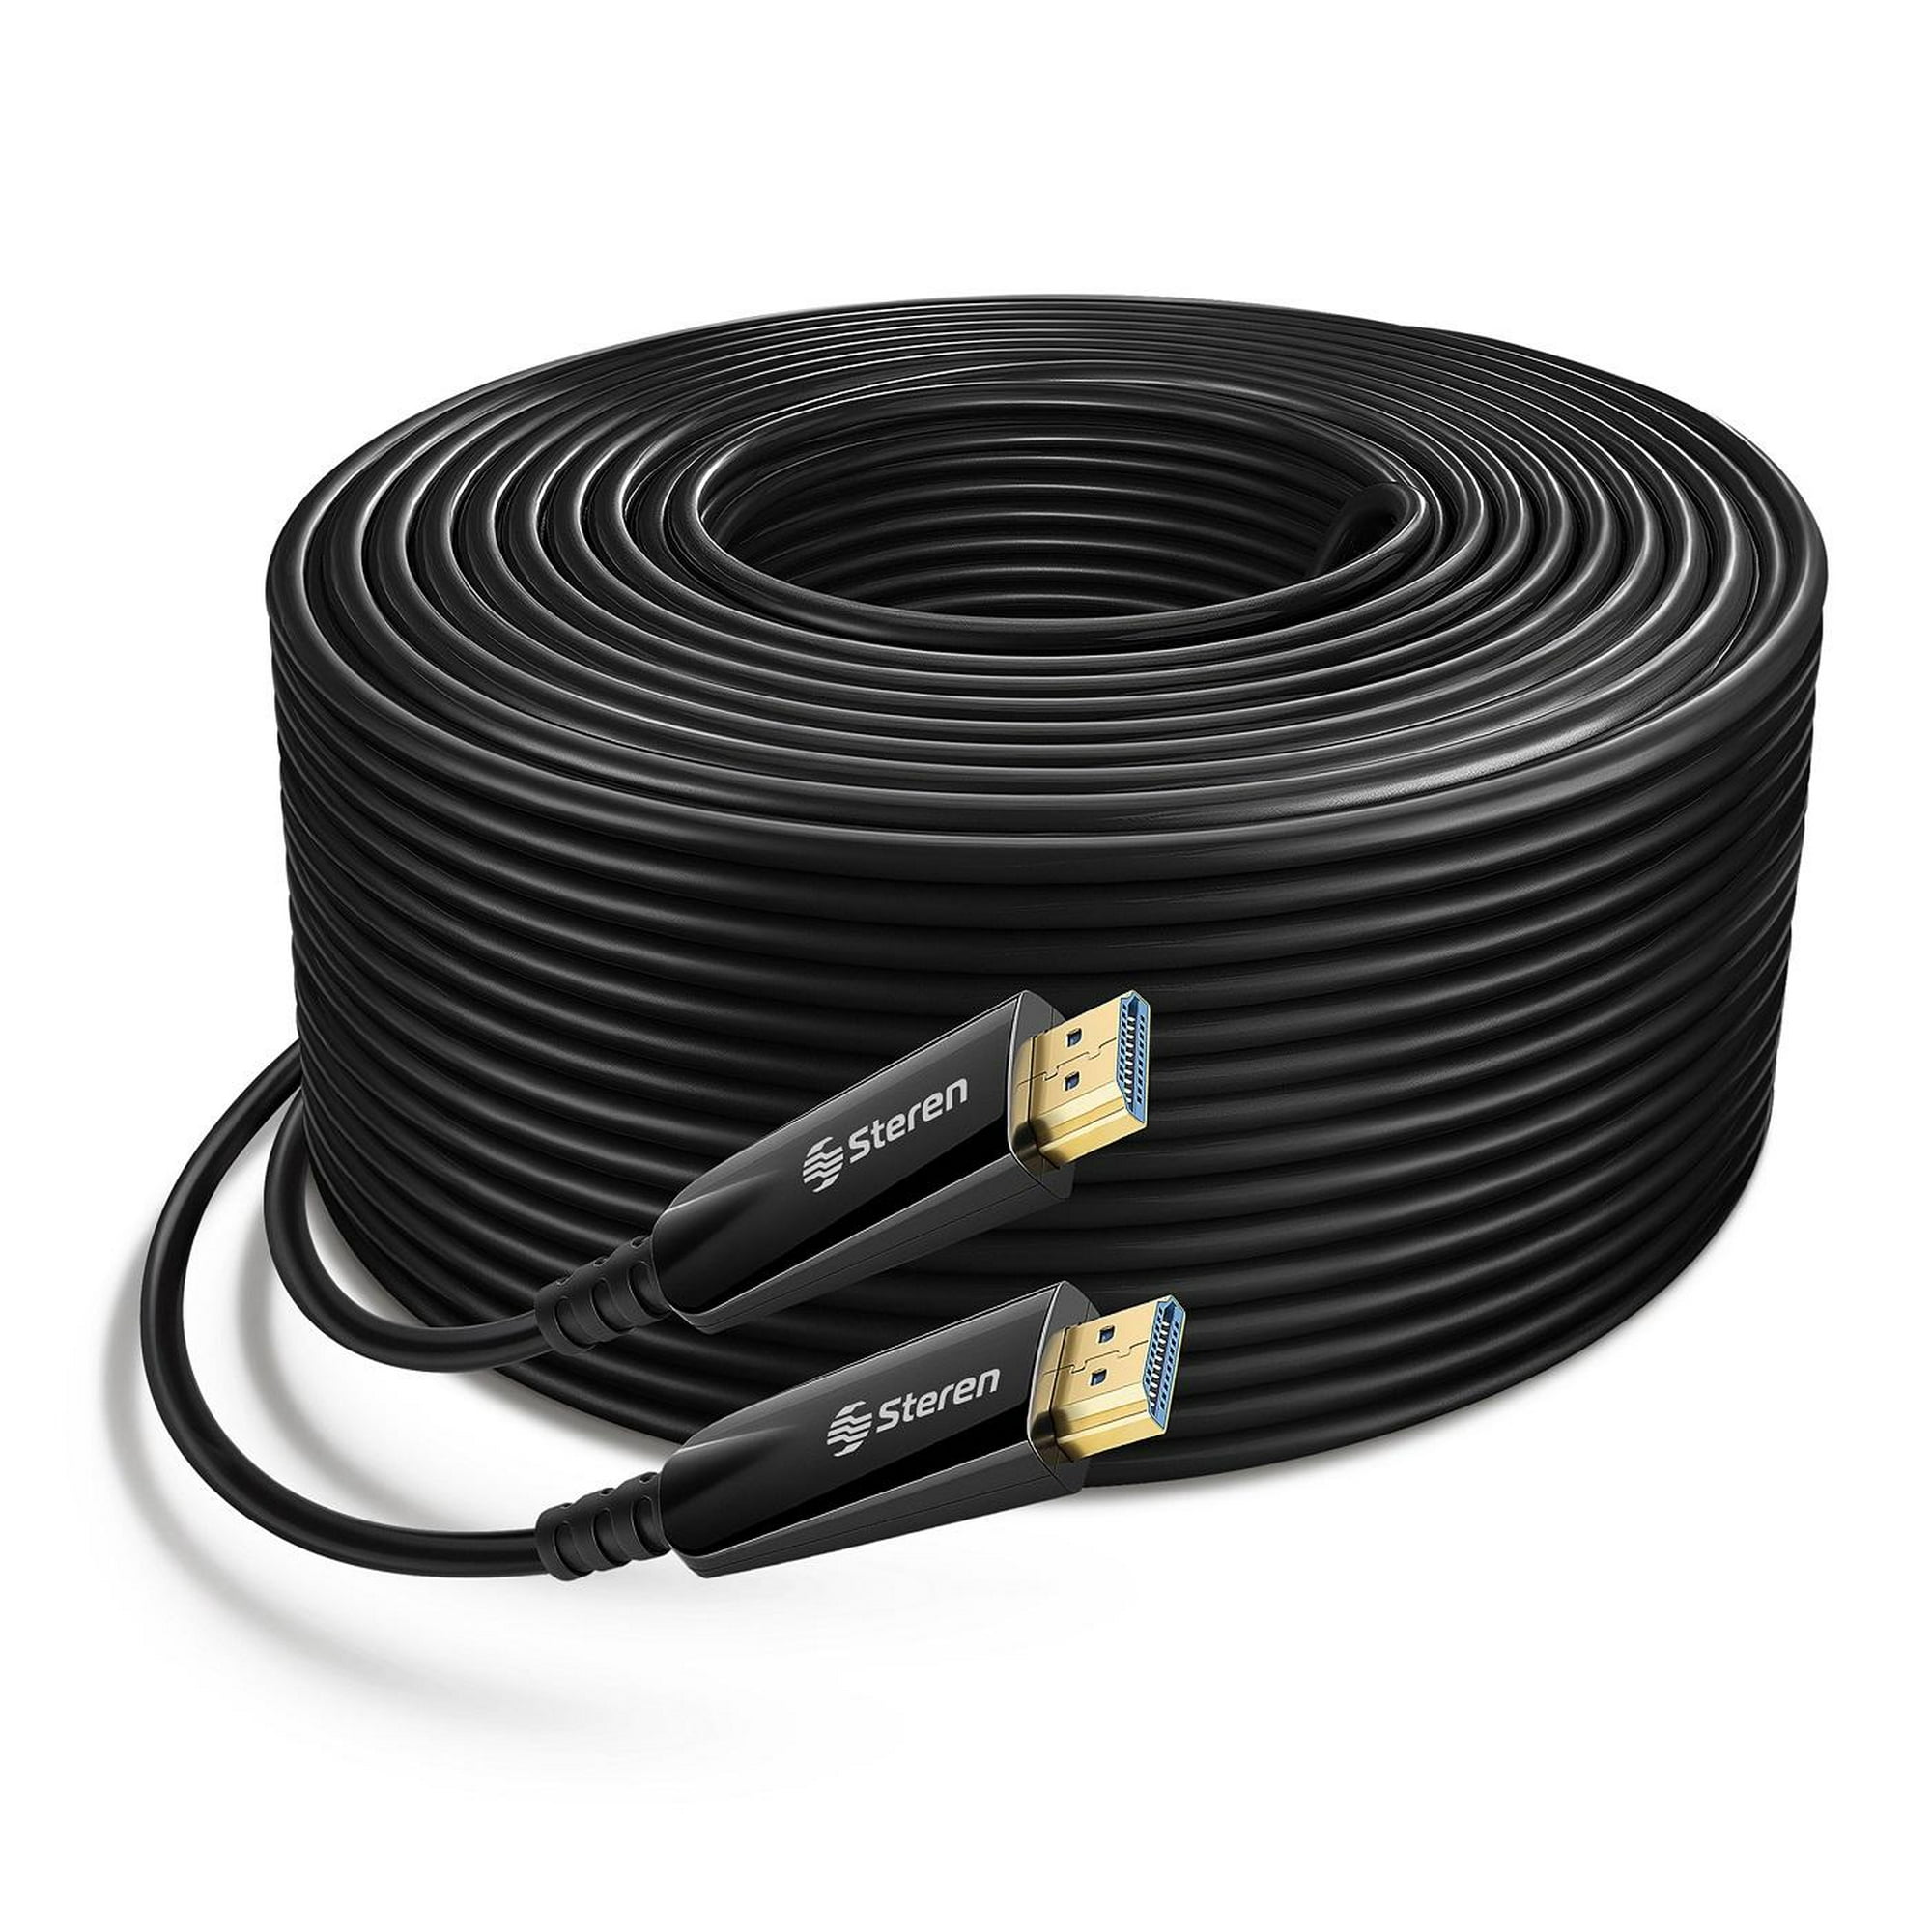 Cable HDMI®/TM 2.1 de ultra alta velocidad, de 2 m